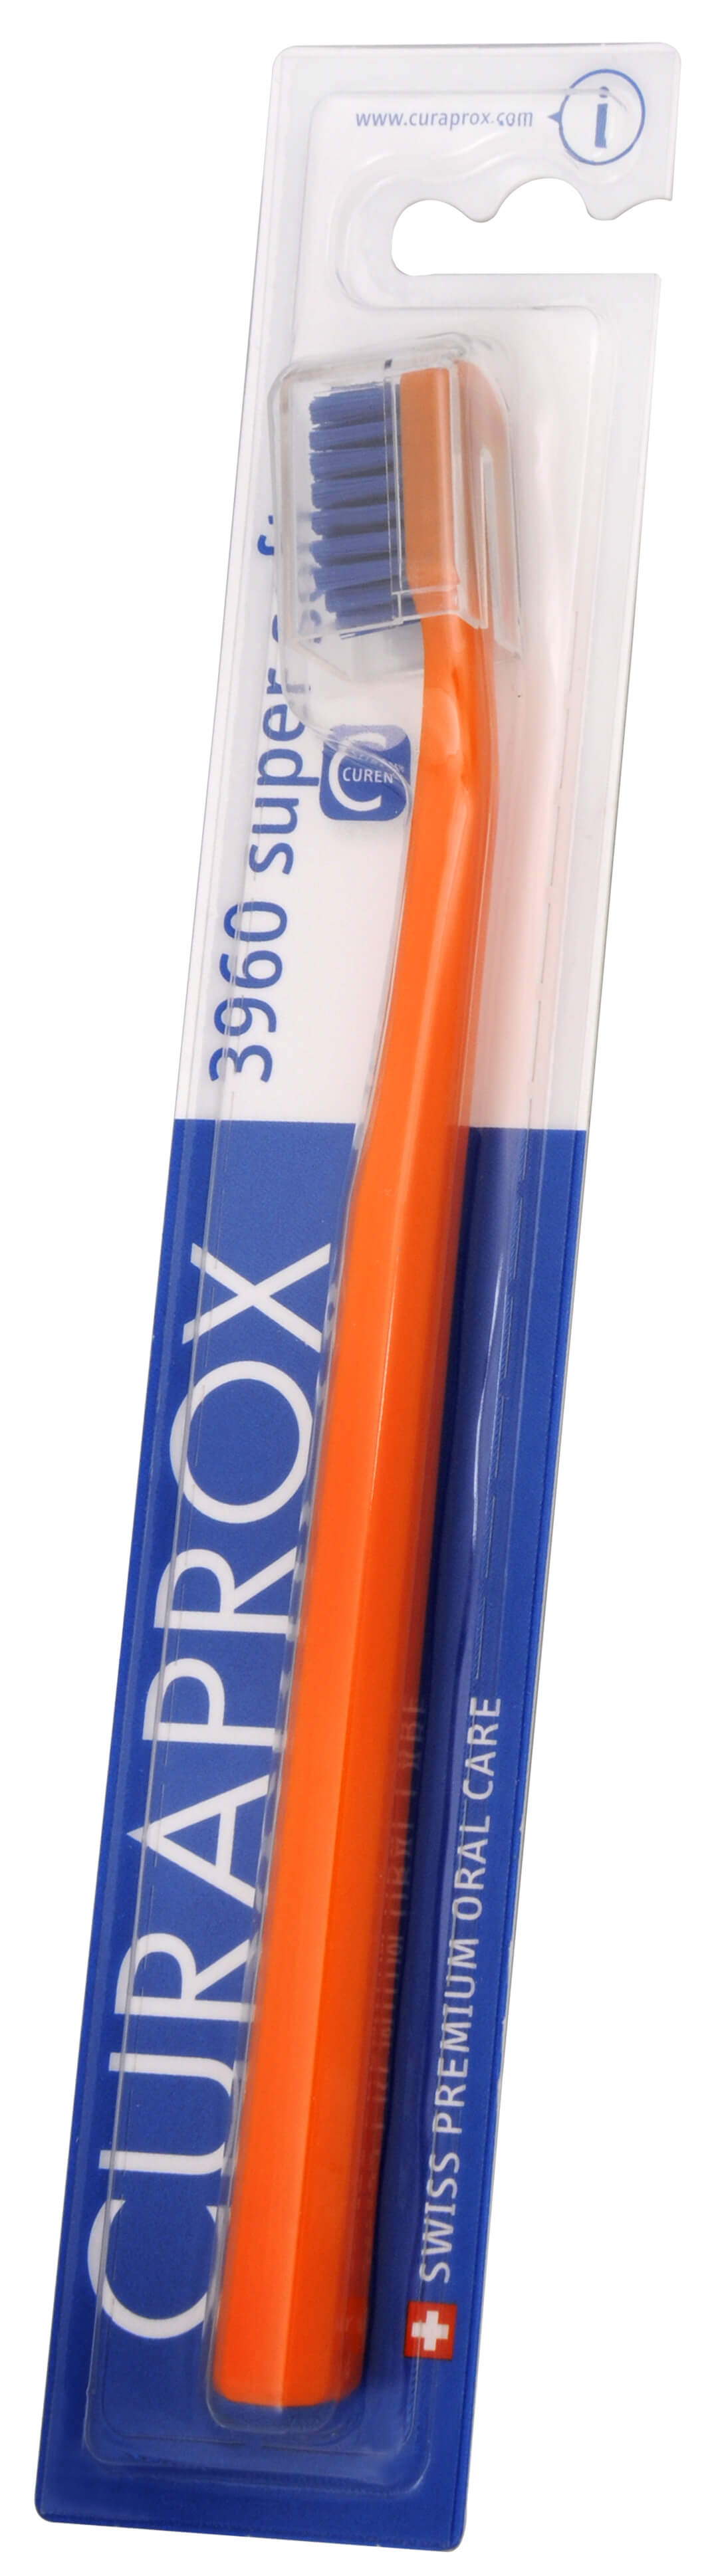 Zobrazit detail výrobku Curaprox Extra jemný zubní kartáček 3960 Super Soft 1 ks